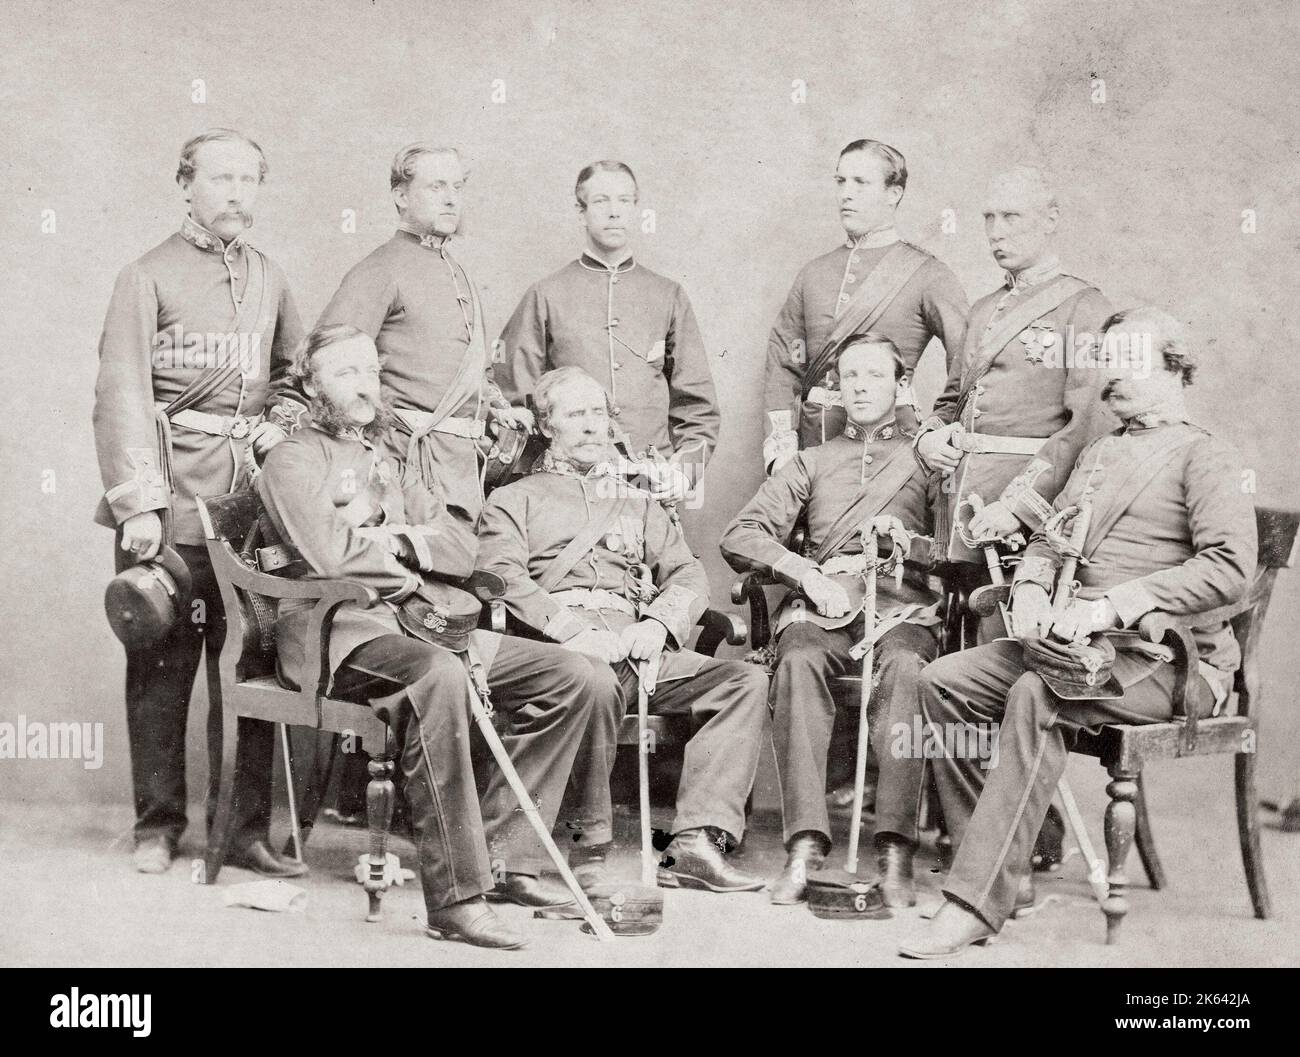 Vintage 19. Jahrhundert Fotografie - Britische Armee in Indien, 1860er Jahre - Offiziere des 6. Regiment Native Infantry 1864 Stockfoto